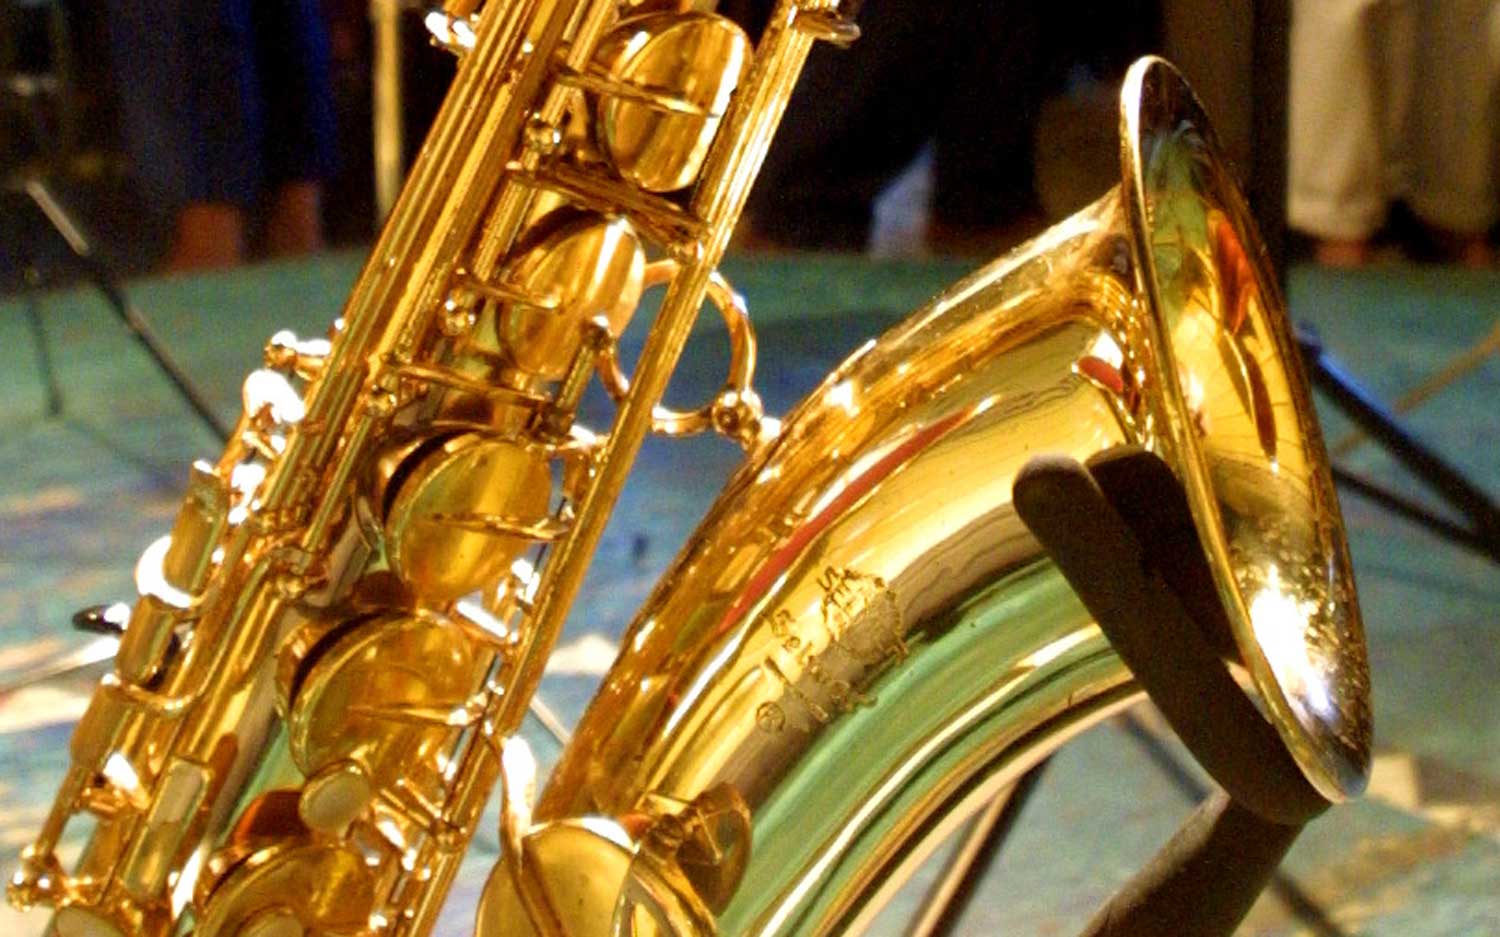 Saxofonisten opgepakt na mishandeling in Apeldoorn 